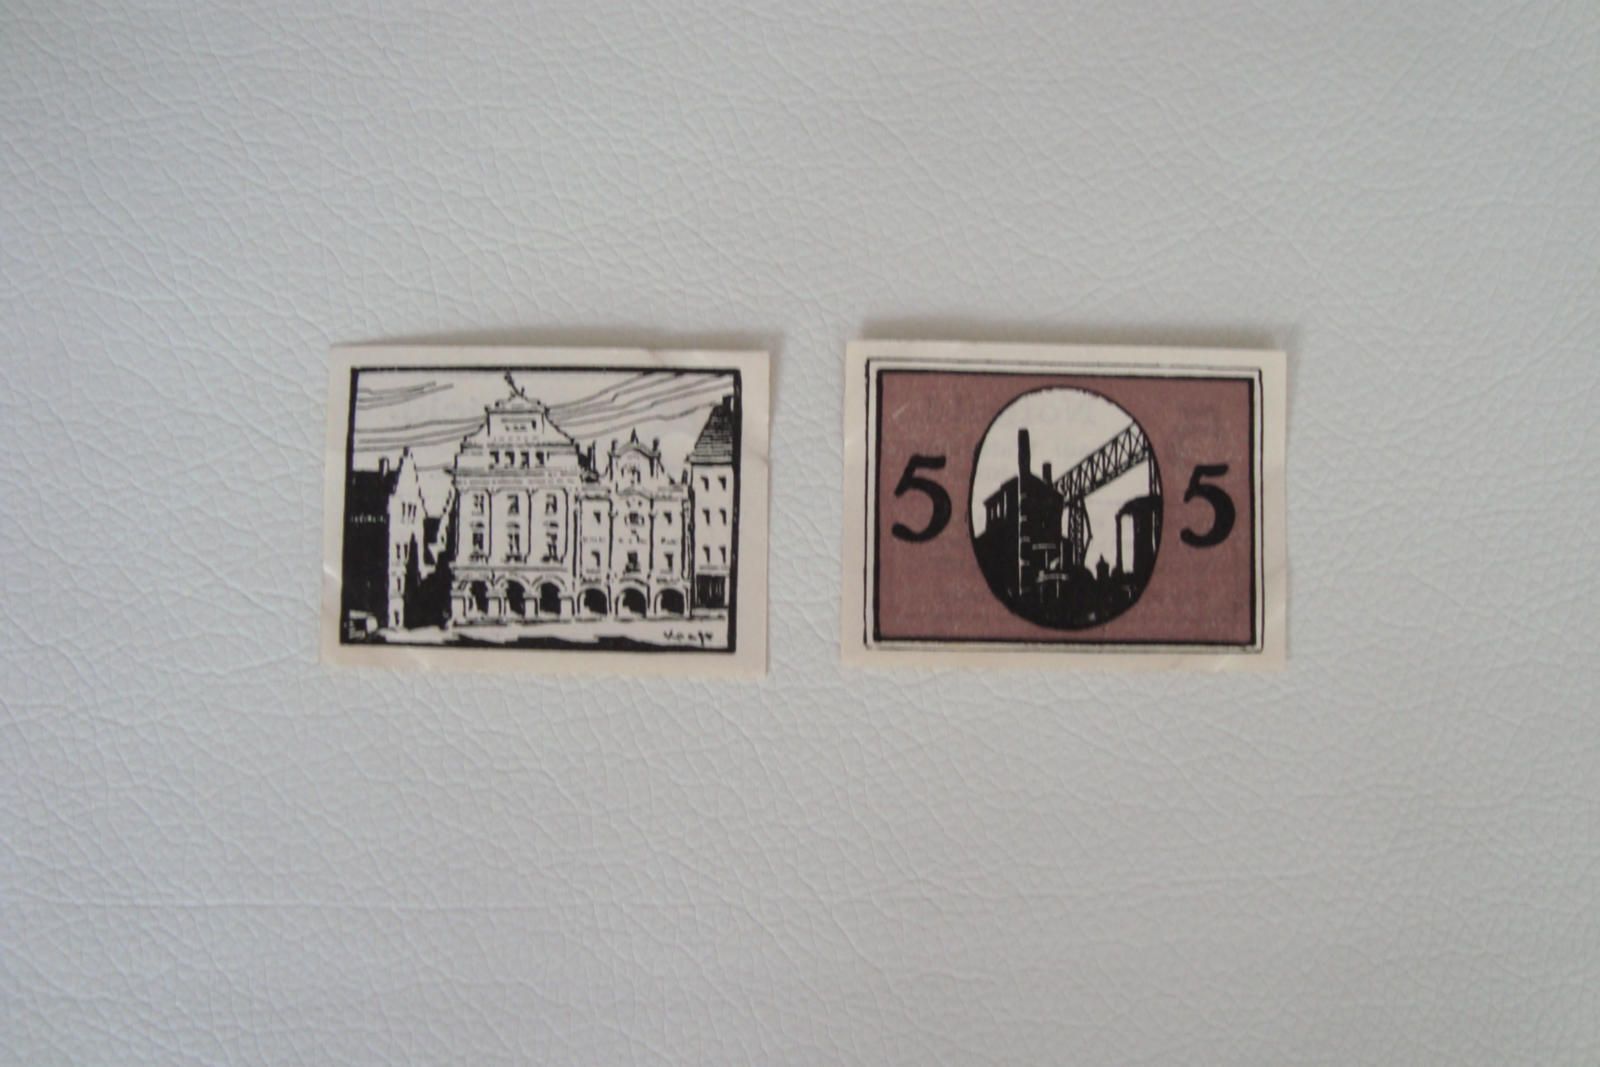 349) Notgeld Waldenburg in Schlesien 2x 5 Pfennig 1920